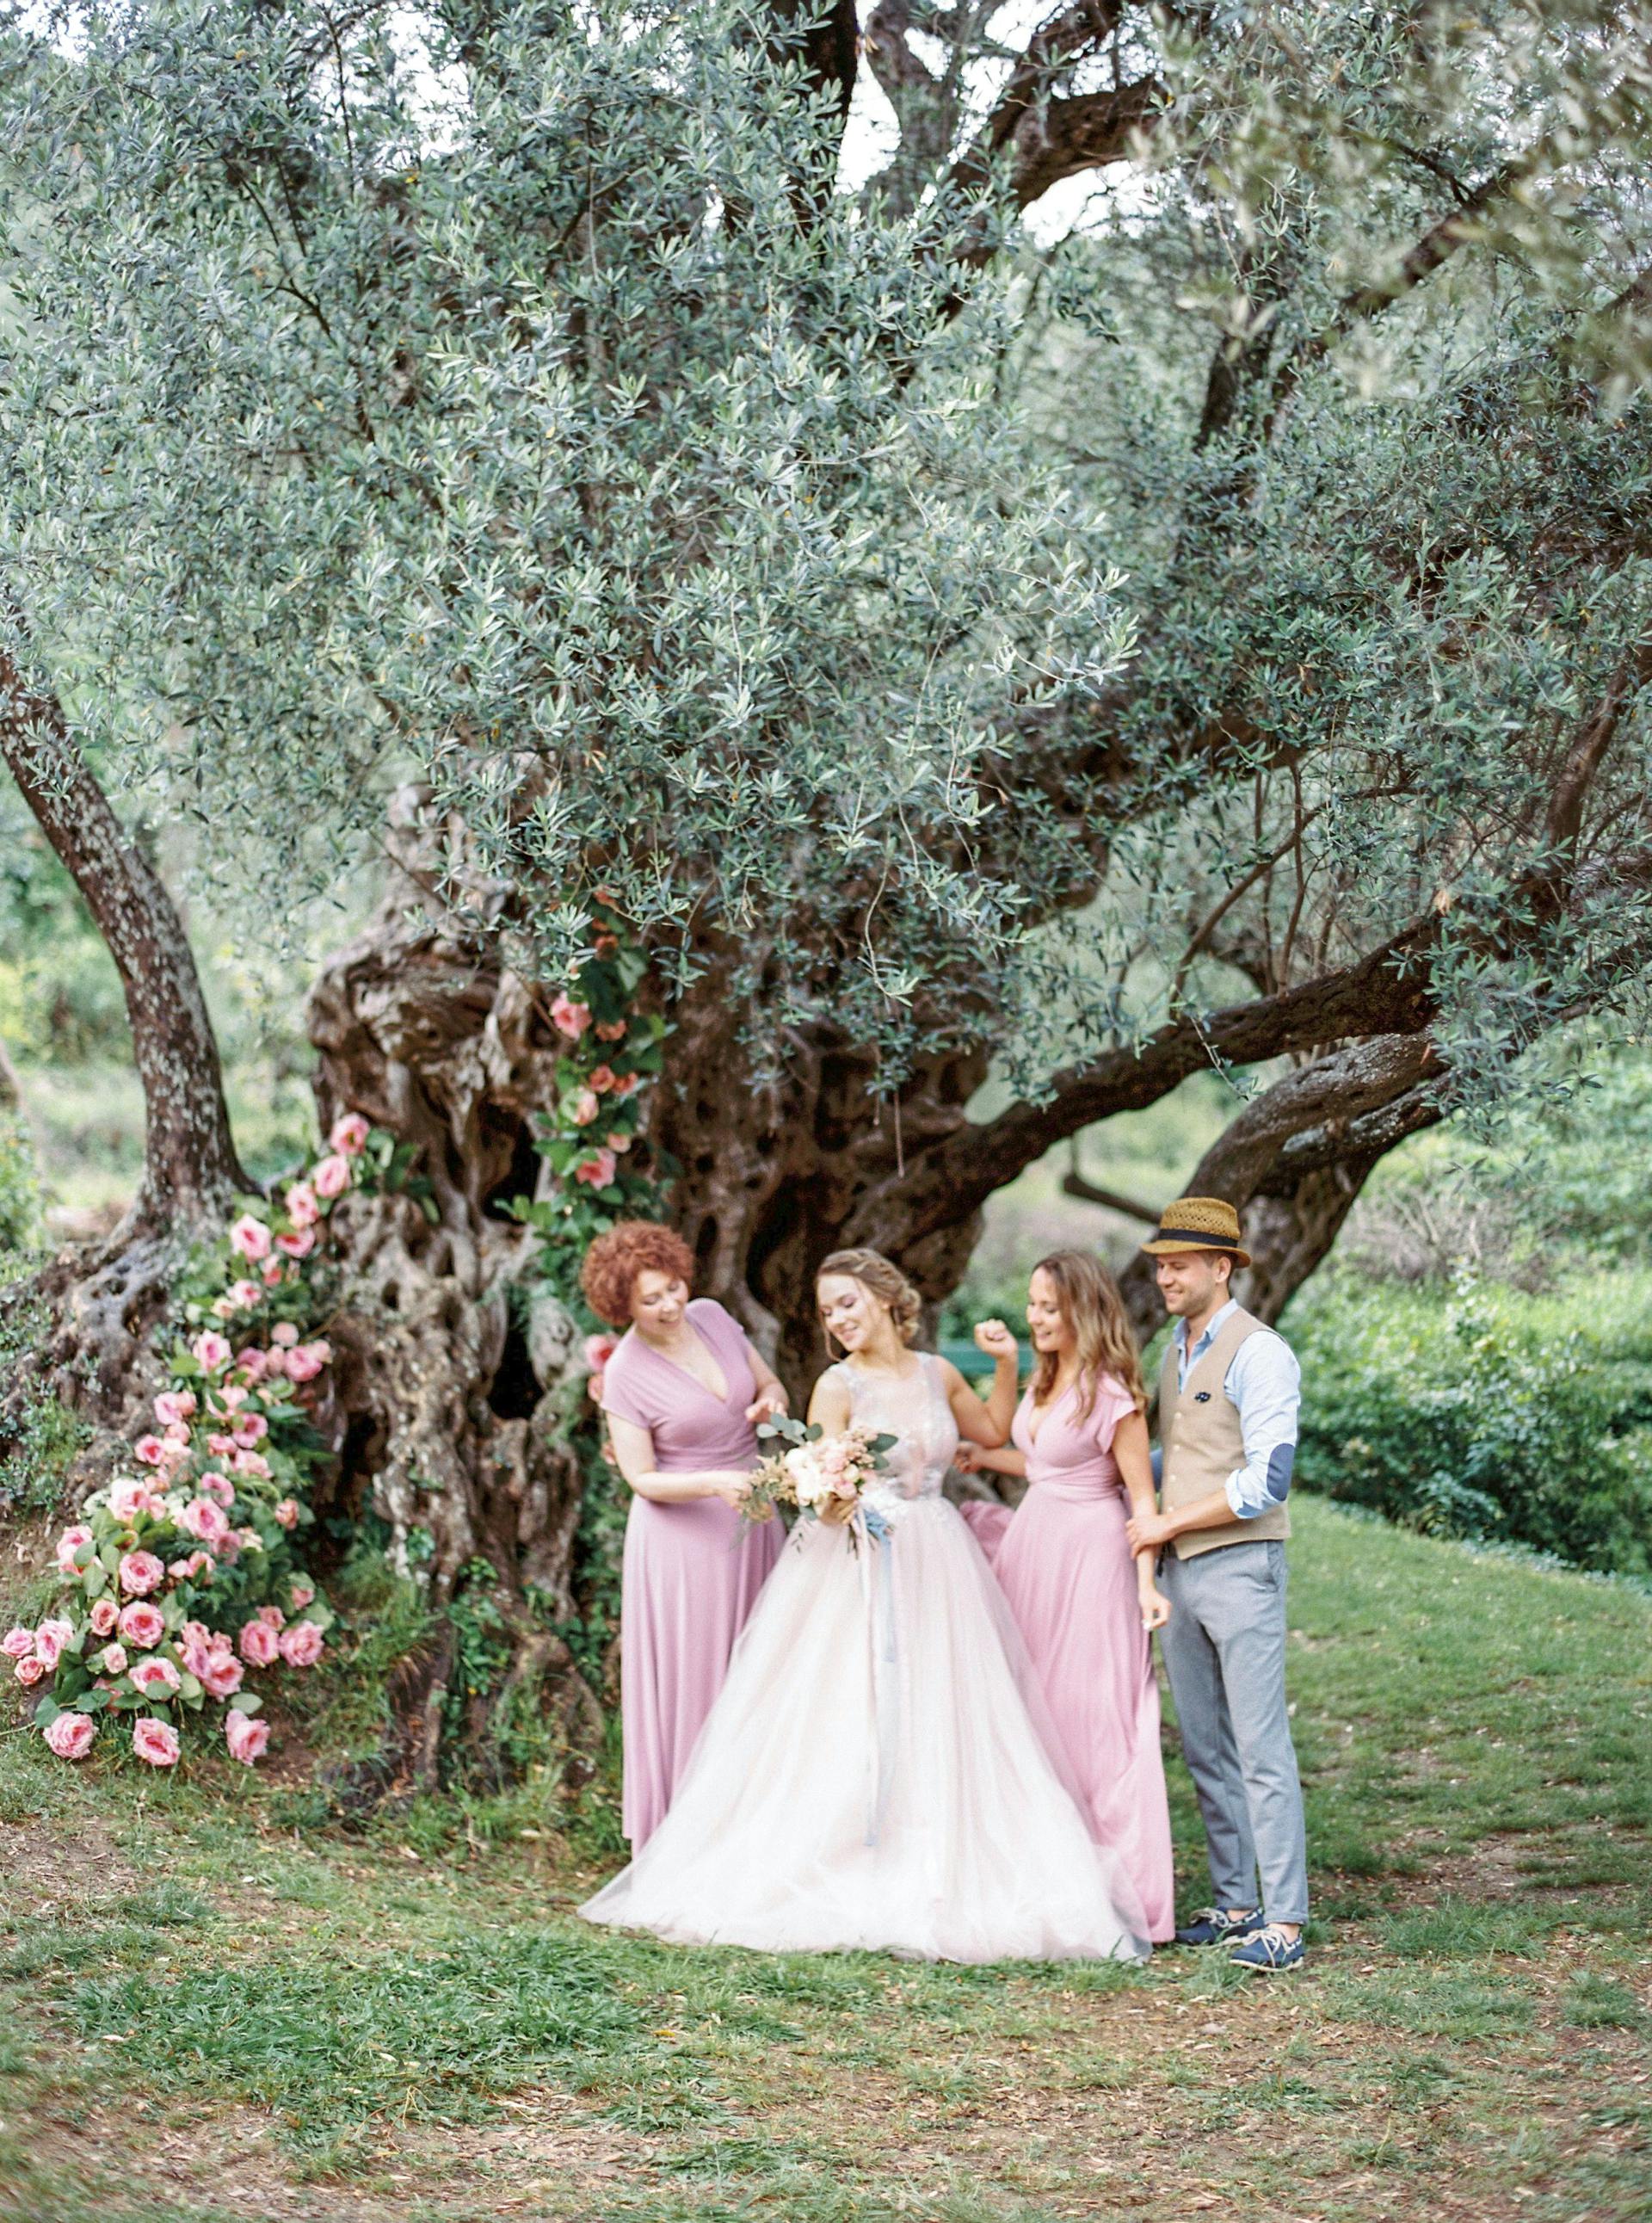 Eine Braut posiert für Fotos mit ihrer Familie unter einem Baum | Quelle: Pexels